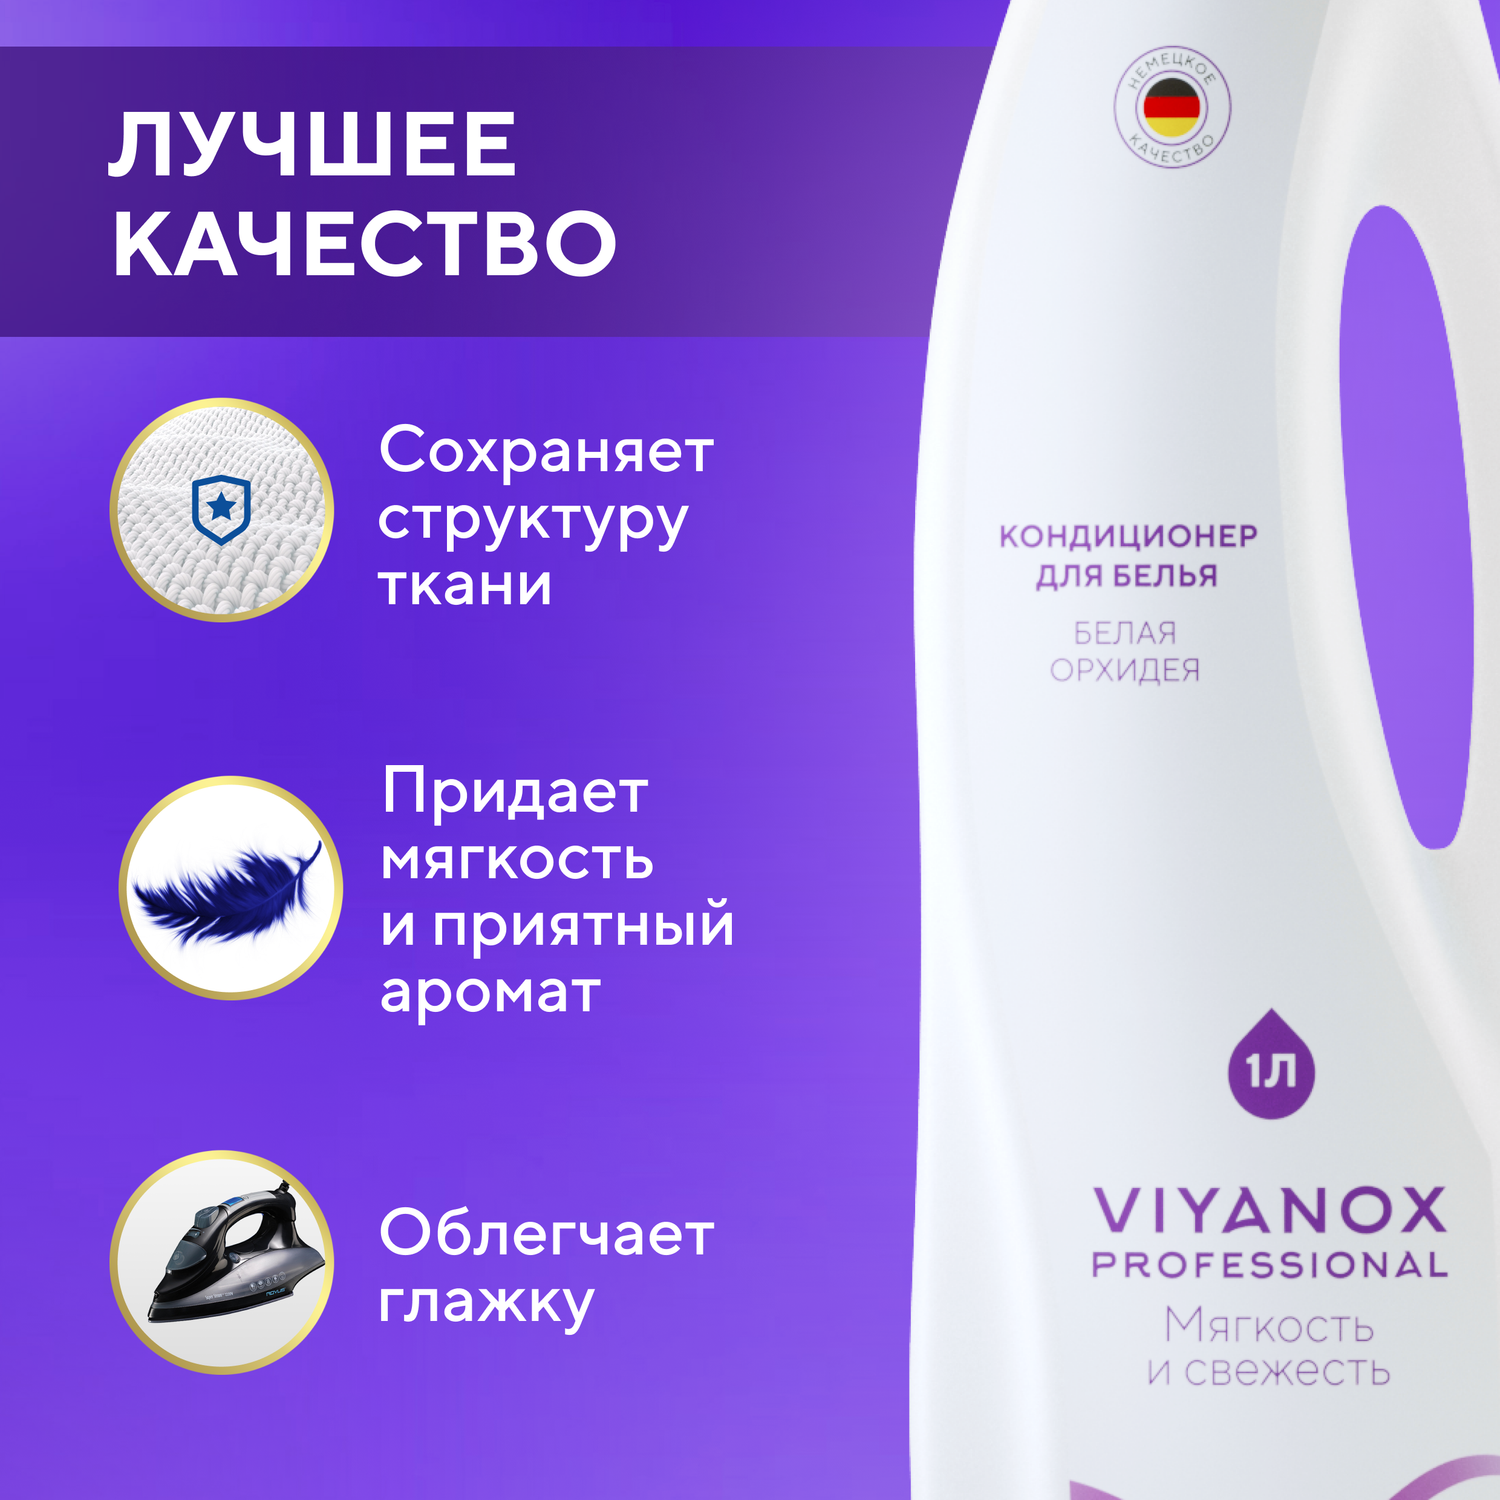 Кондиционер для белья Viyanox Professional «Белая Орхидея» - фото 3